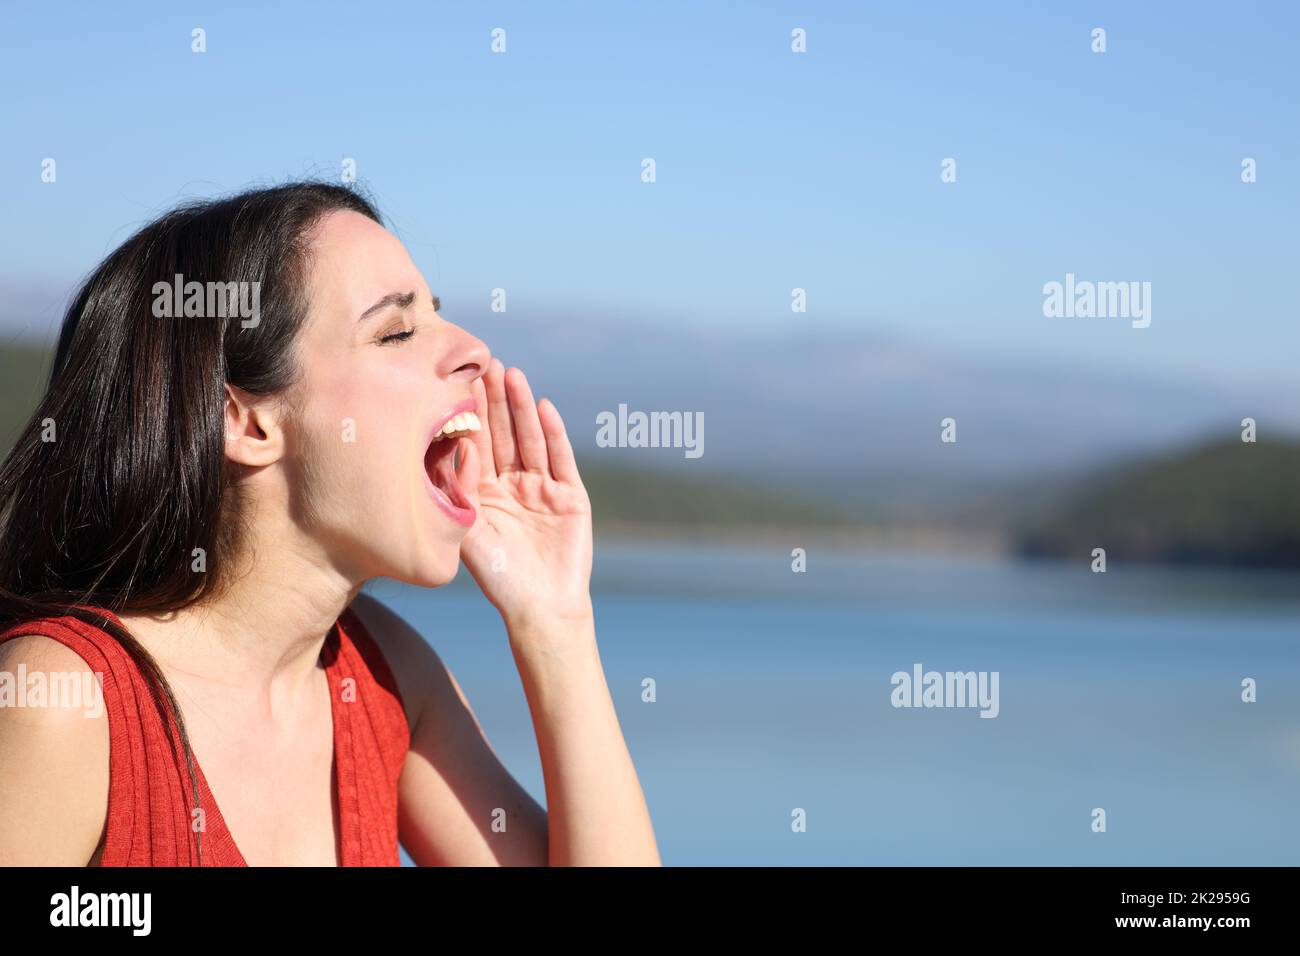 Woman screaming loud in a lake Stock Photo